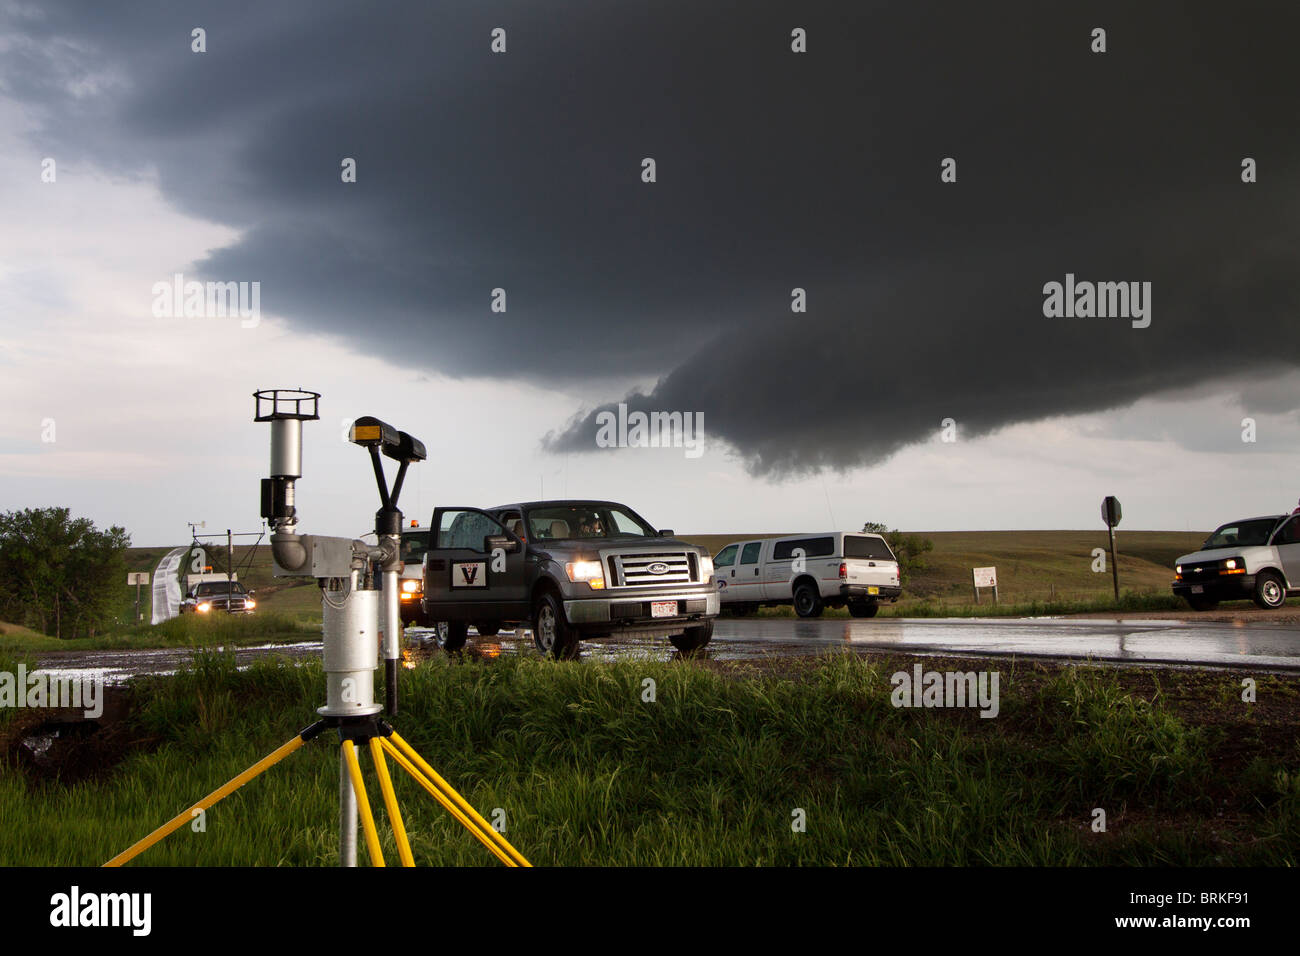 Projet Vortex 2 storm chasers stationné le long de la route dans le Kansas, le 23 mai 2010. Banque D'Images